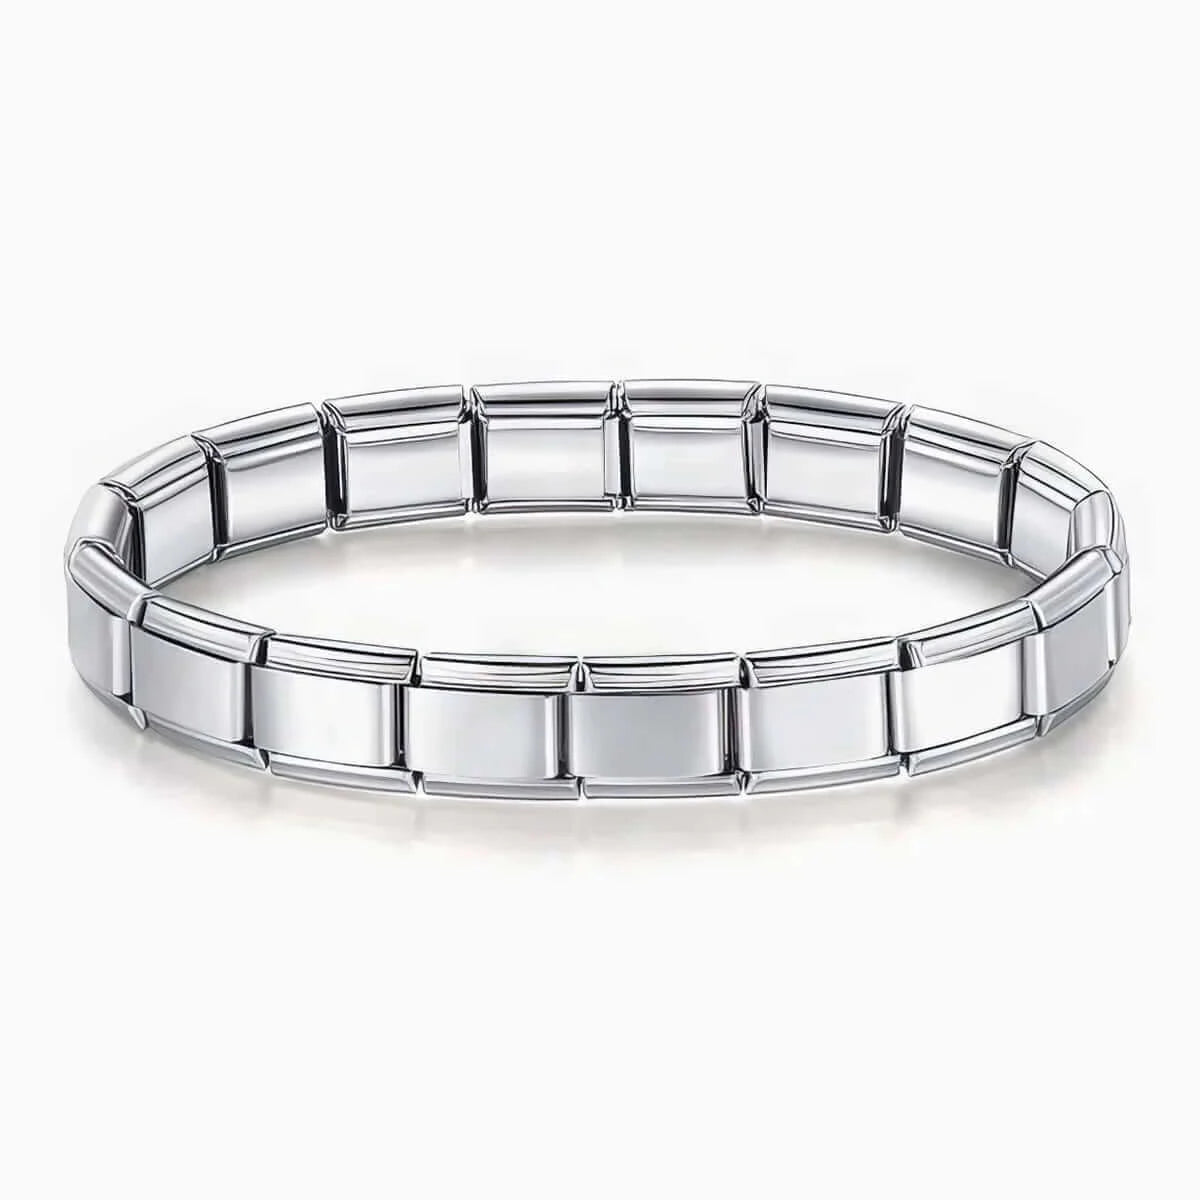 Geoffrey Beene Stainless Steel Double Franco Chain Bracelet - 9850650 | HSN